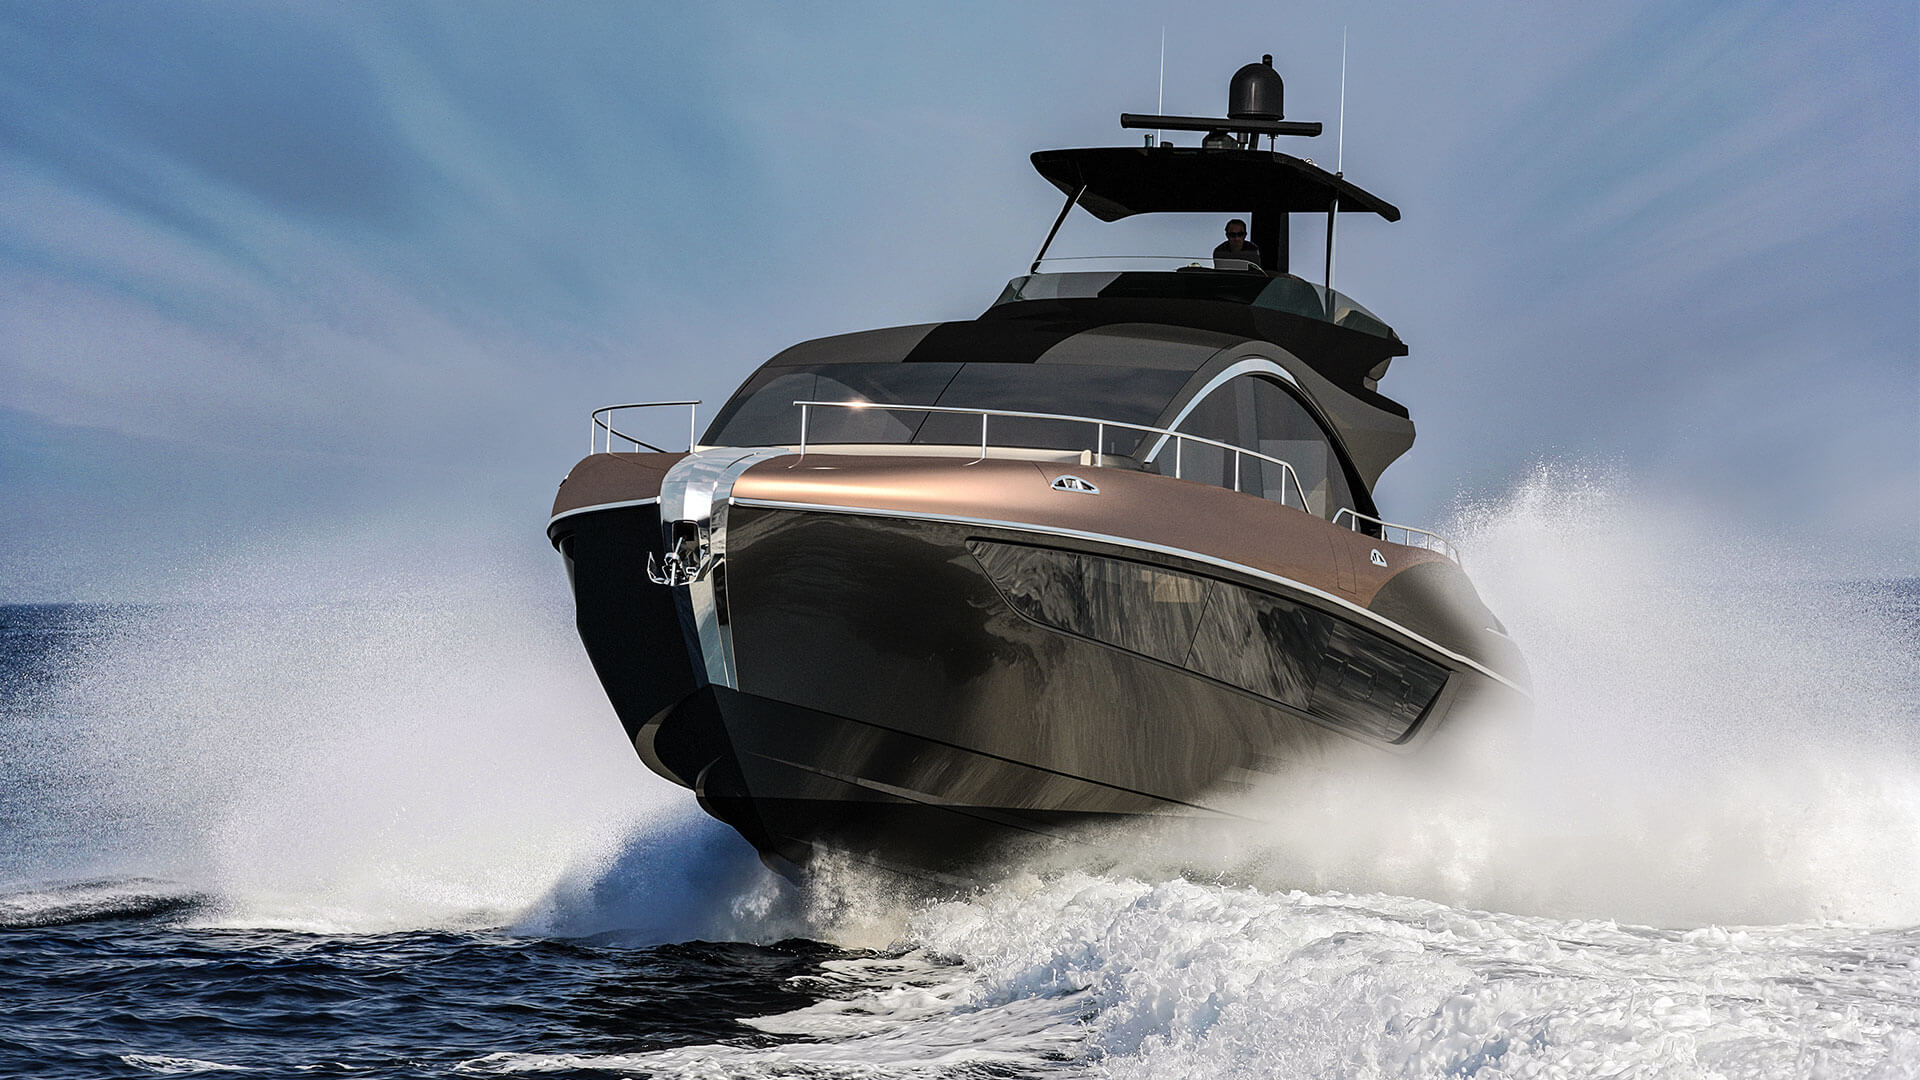 2019-lexus-ly-650-luxury-yacht-hero-1920x1080_tcm-3145-1463317